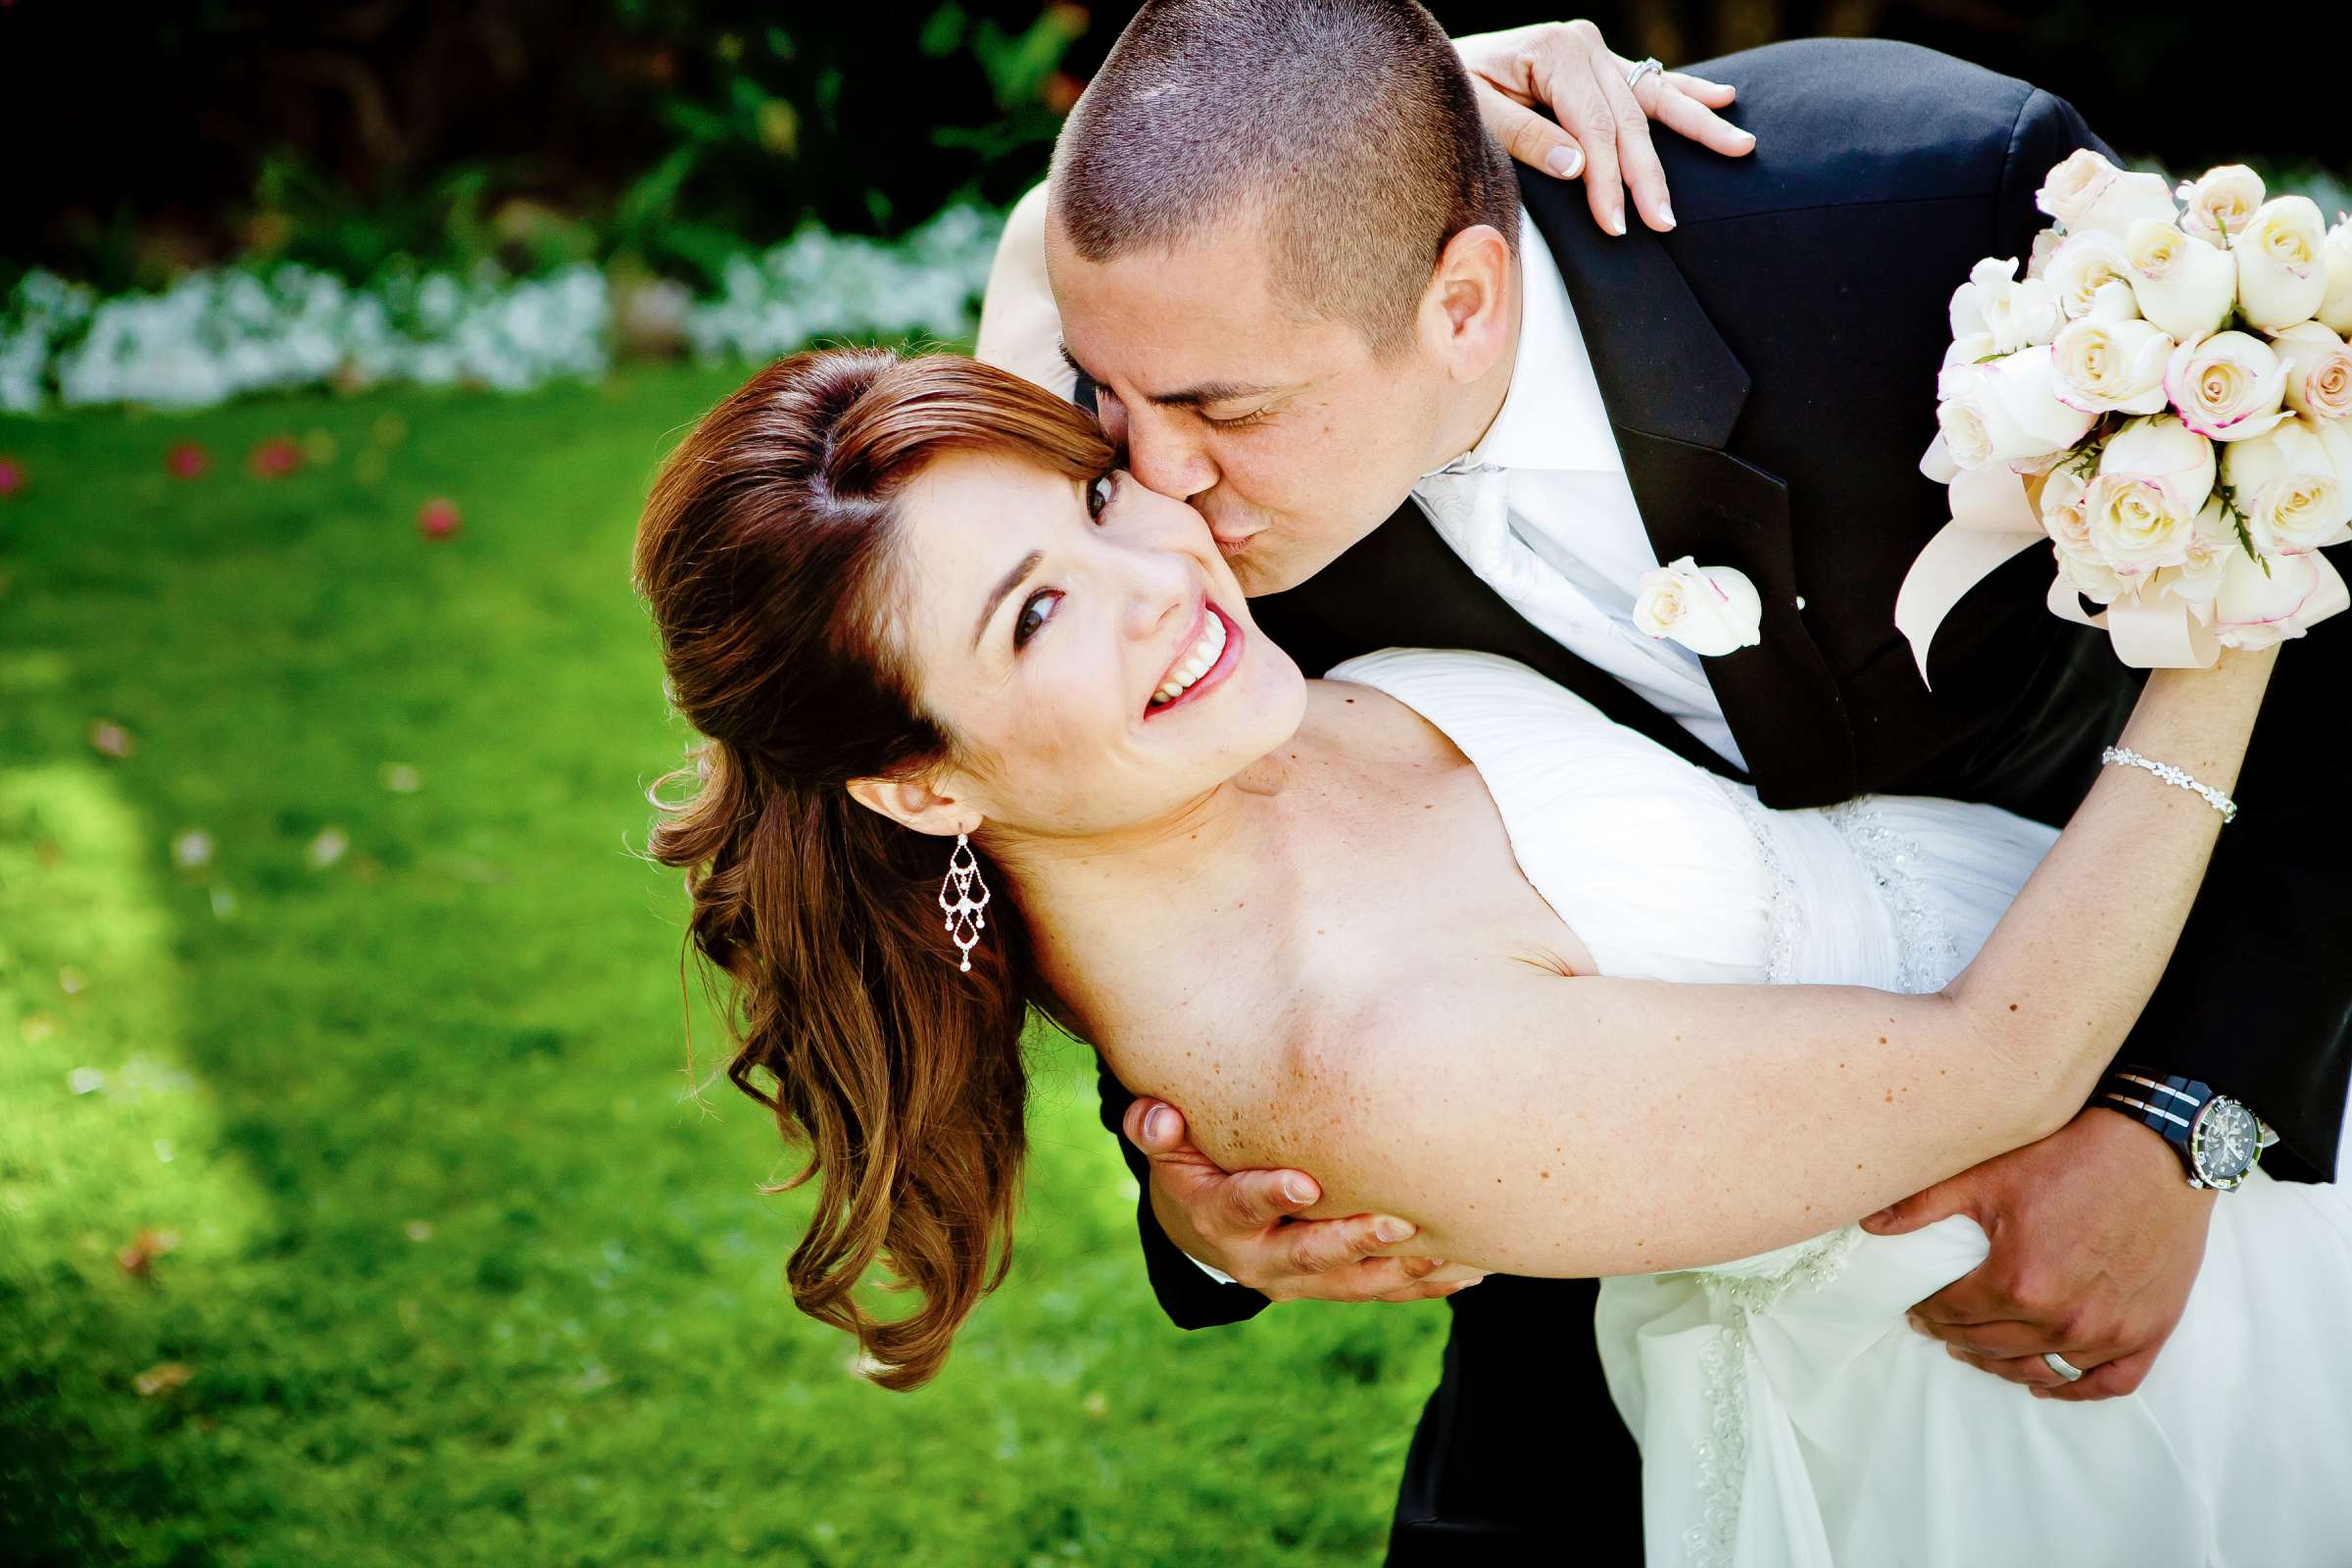 Hotel Del Coronado Wedding, Eva and Leo Wedding Photo #307330 by True Photography